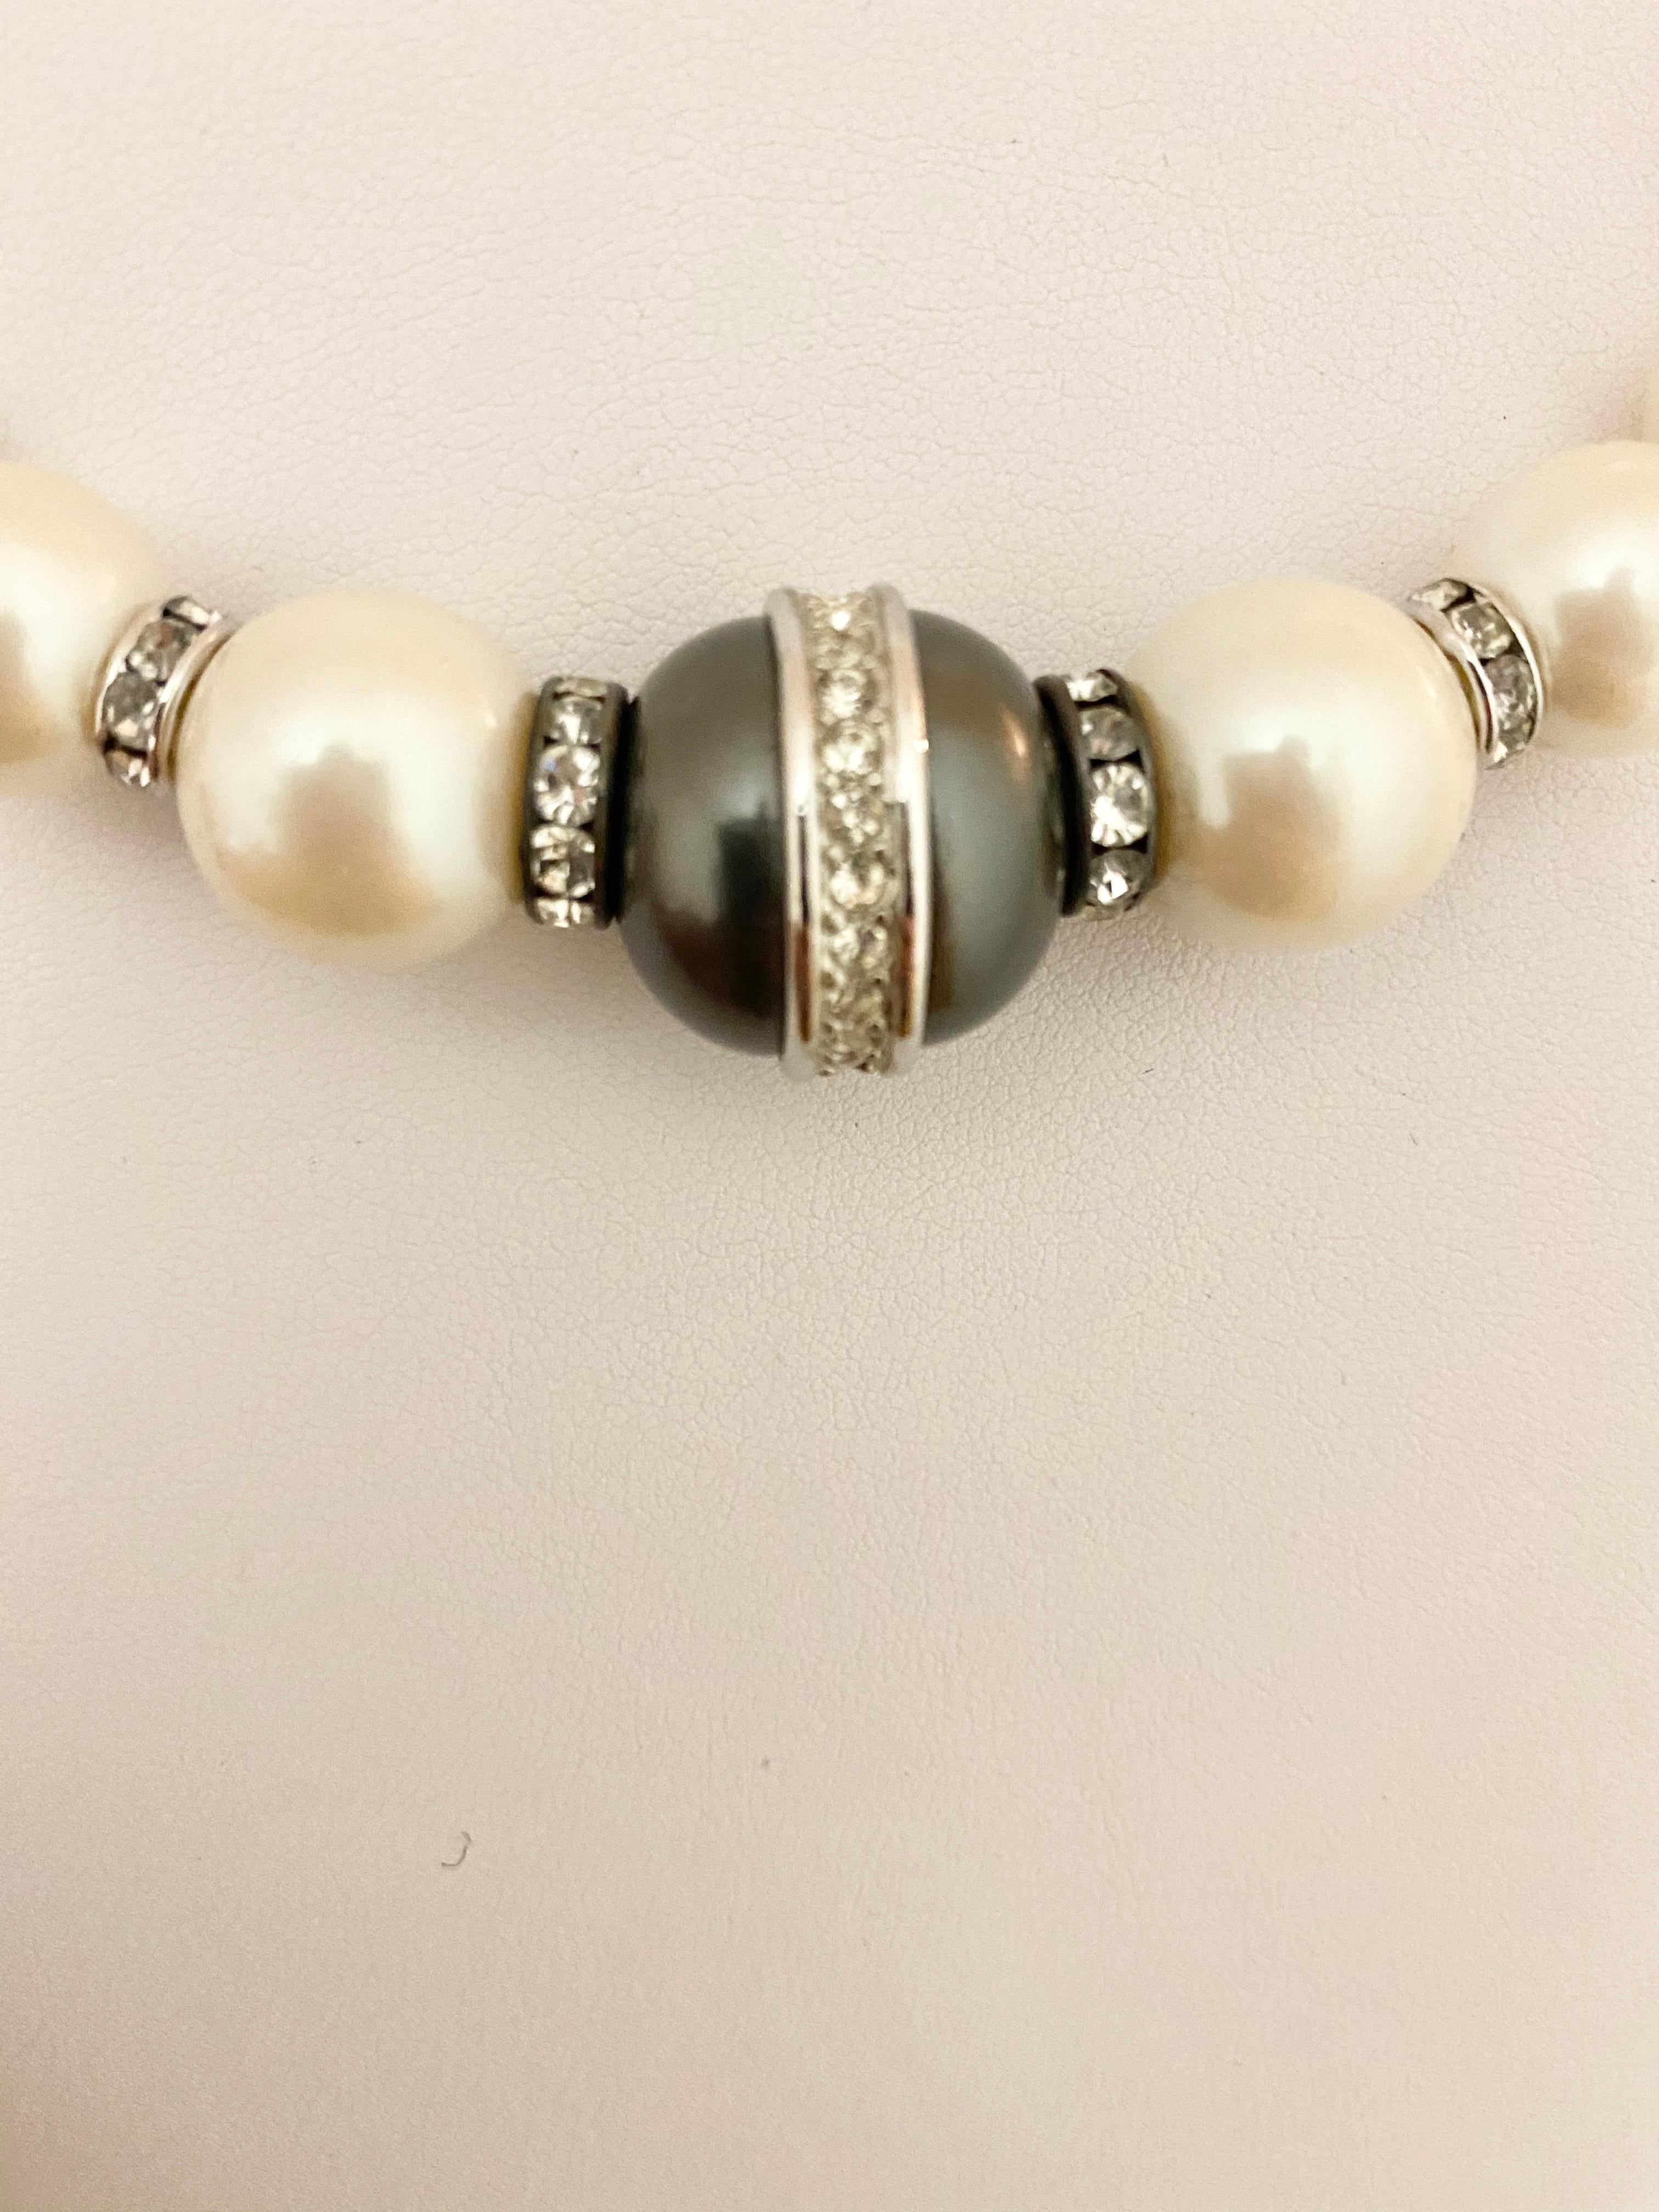 ralph lauren pearl necklace